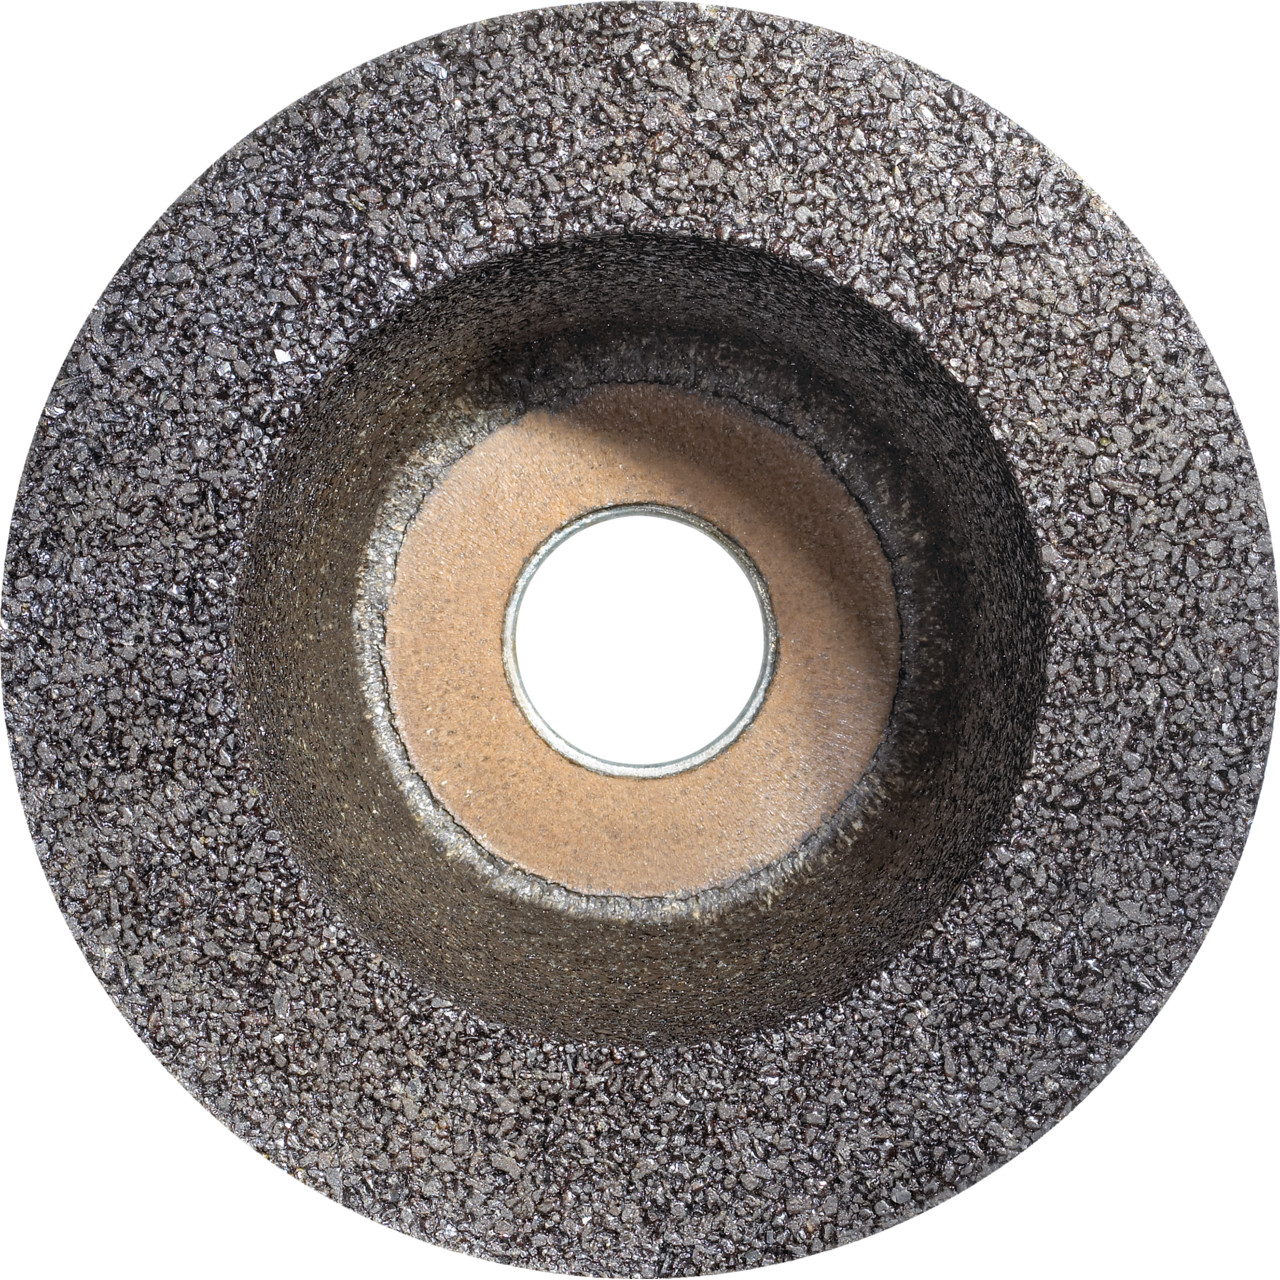 TYROLIT Pot en résine synthétique DxTxGE 100x45xM14 Pour la pierre, forme : 6ZB (pot de meulage), art. 553403